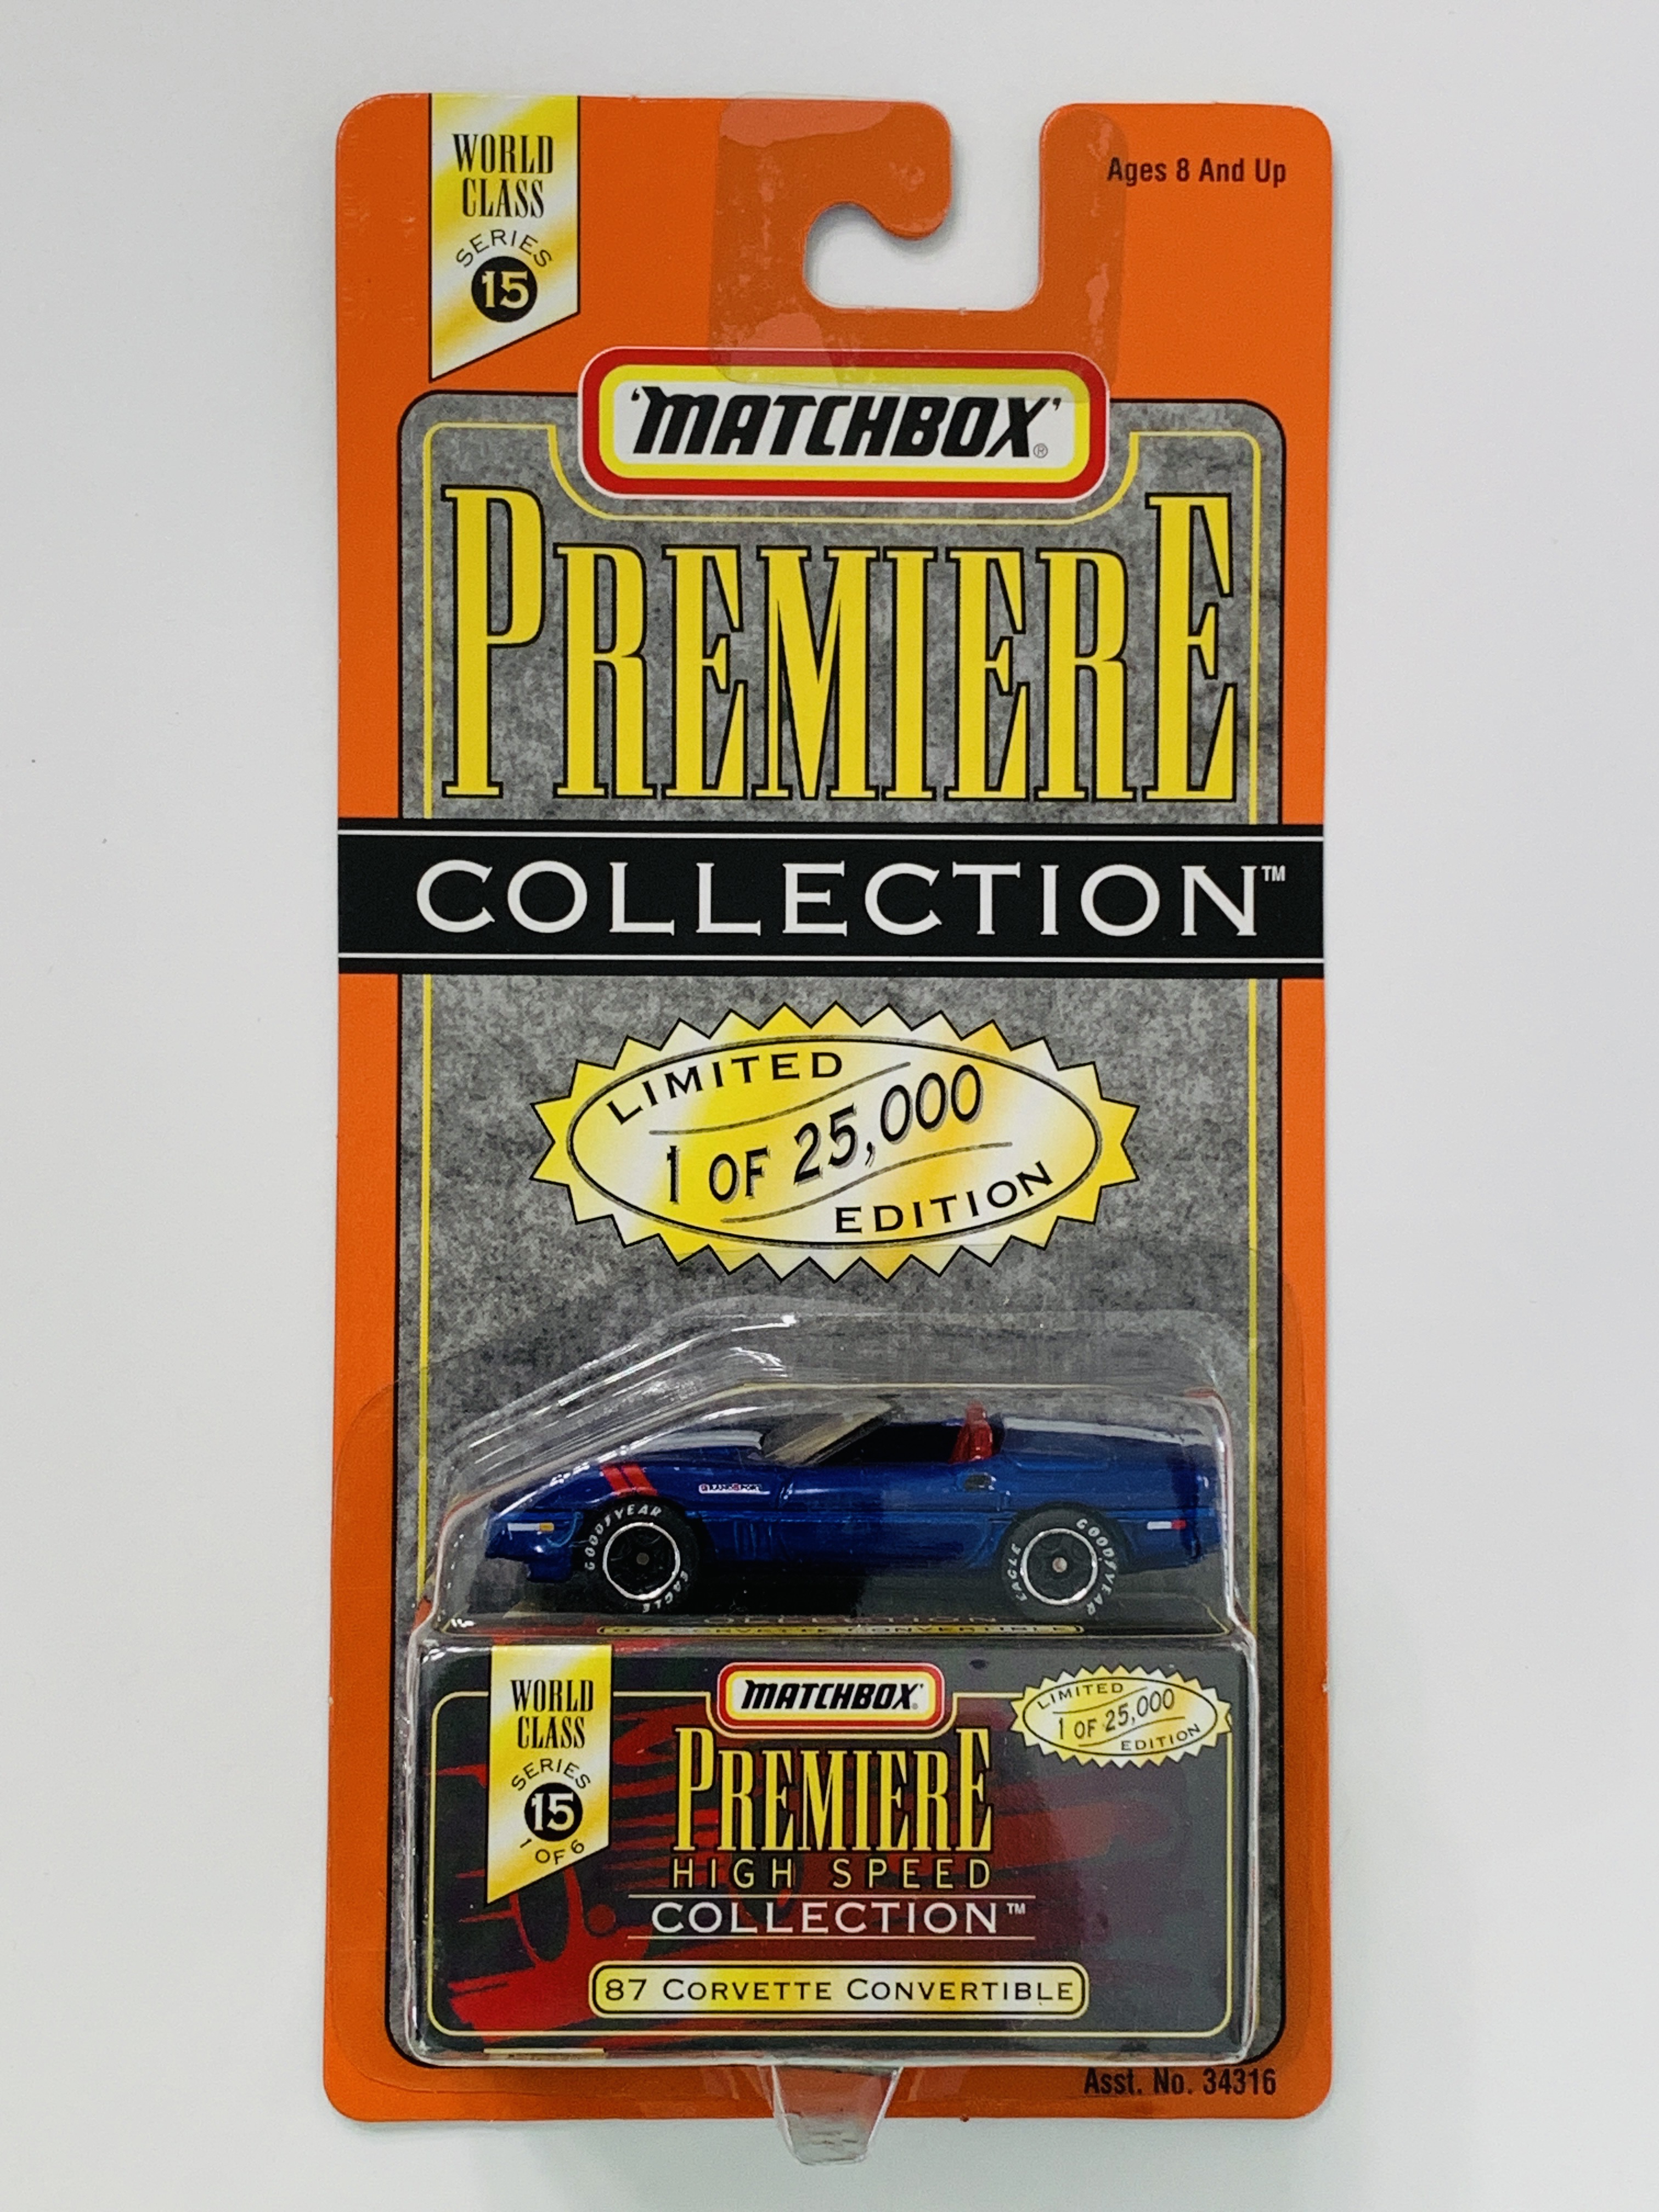 Matchbox Premiere World Class Series 15 '87 Corvette Convertible